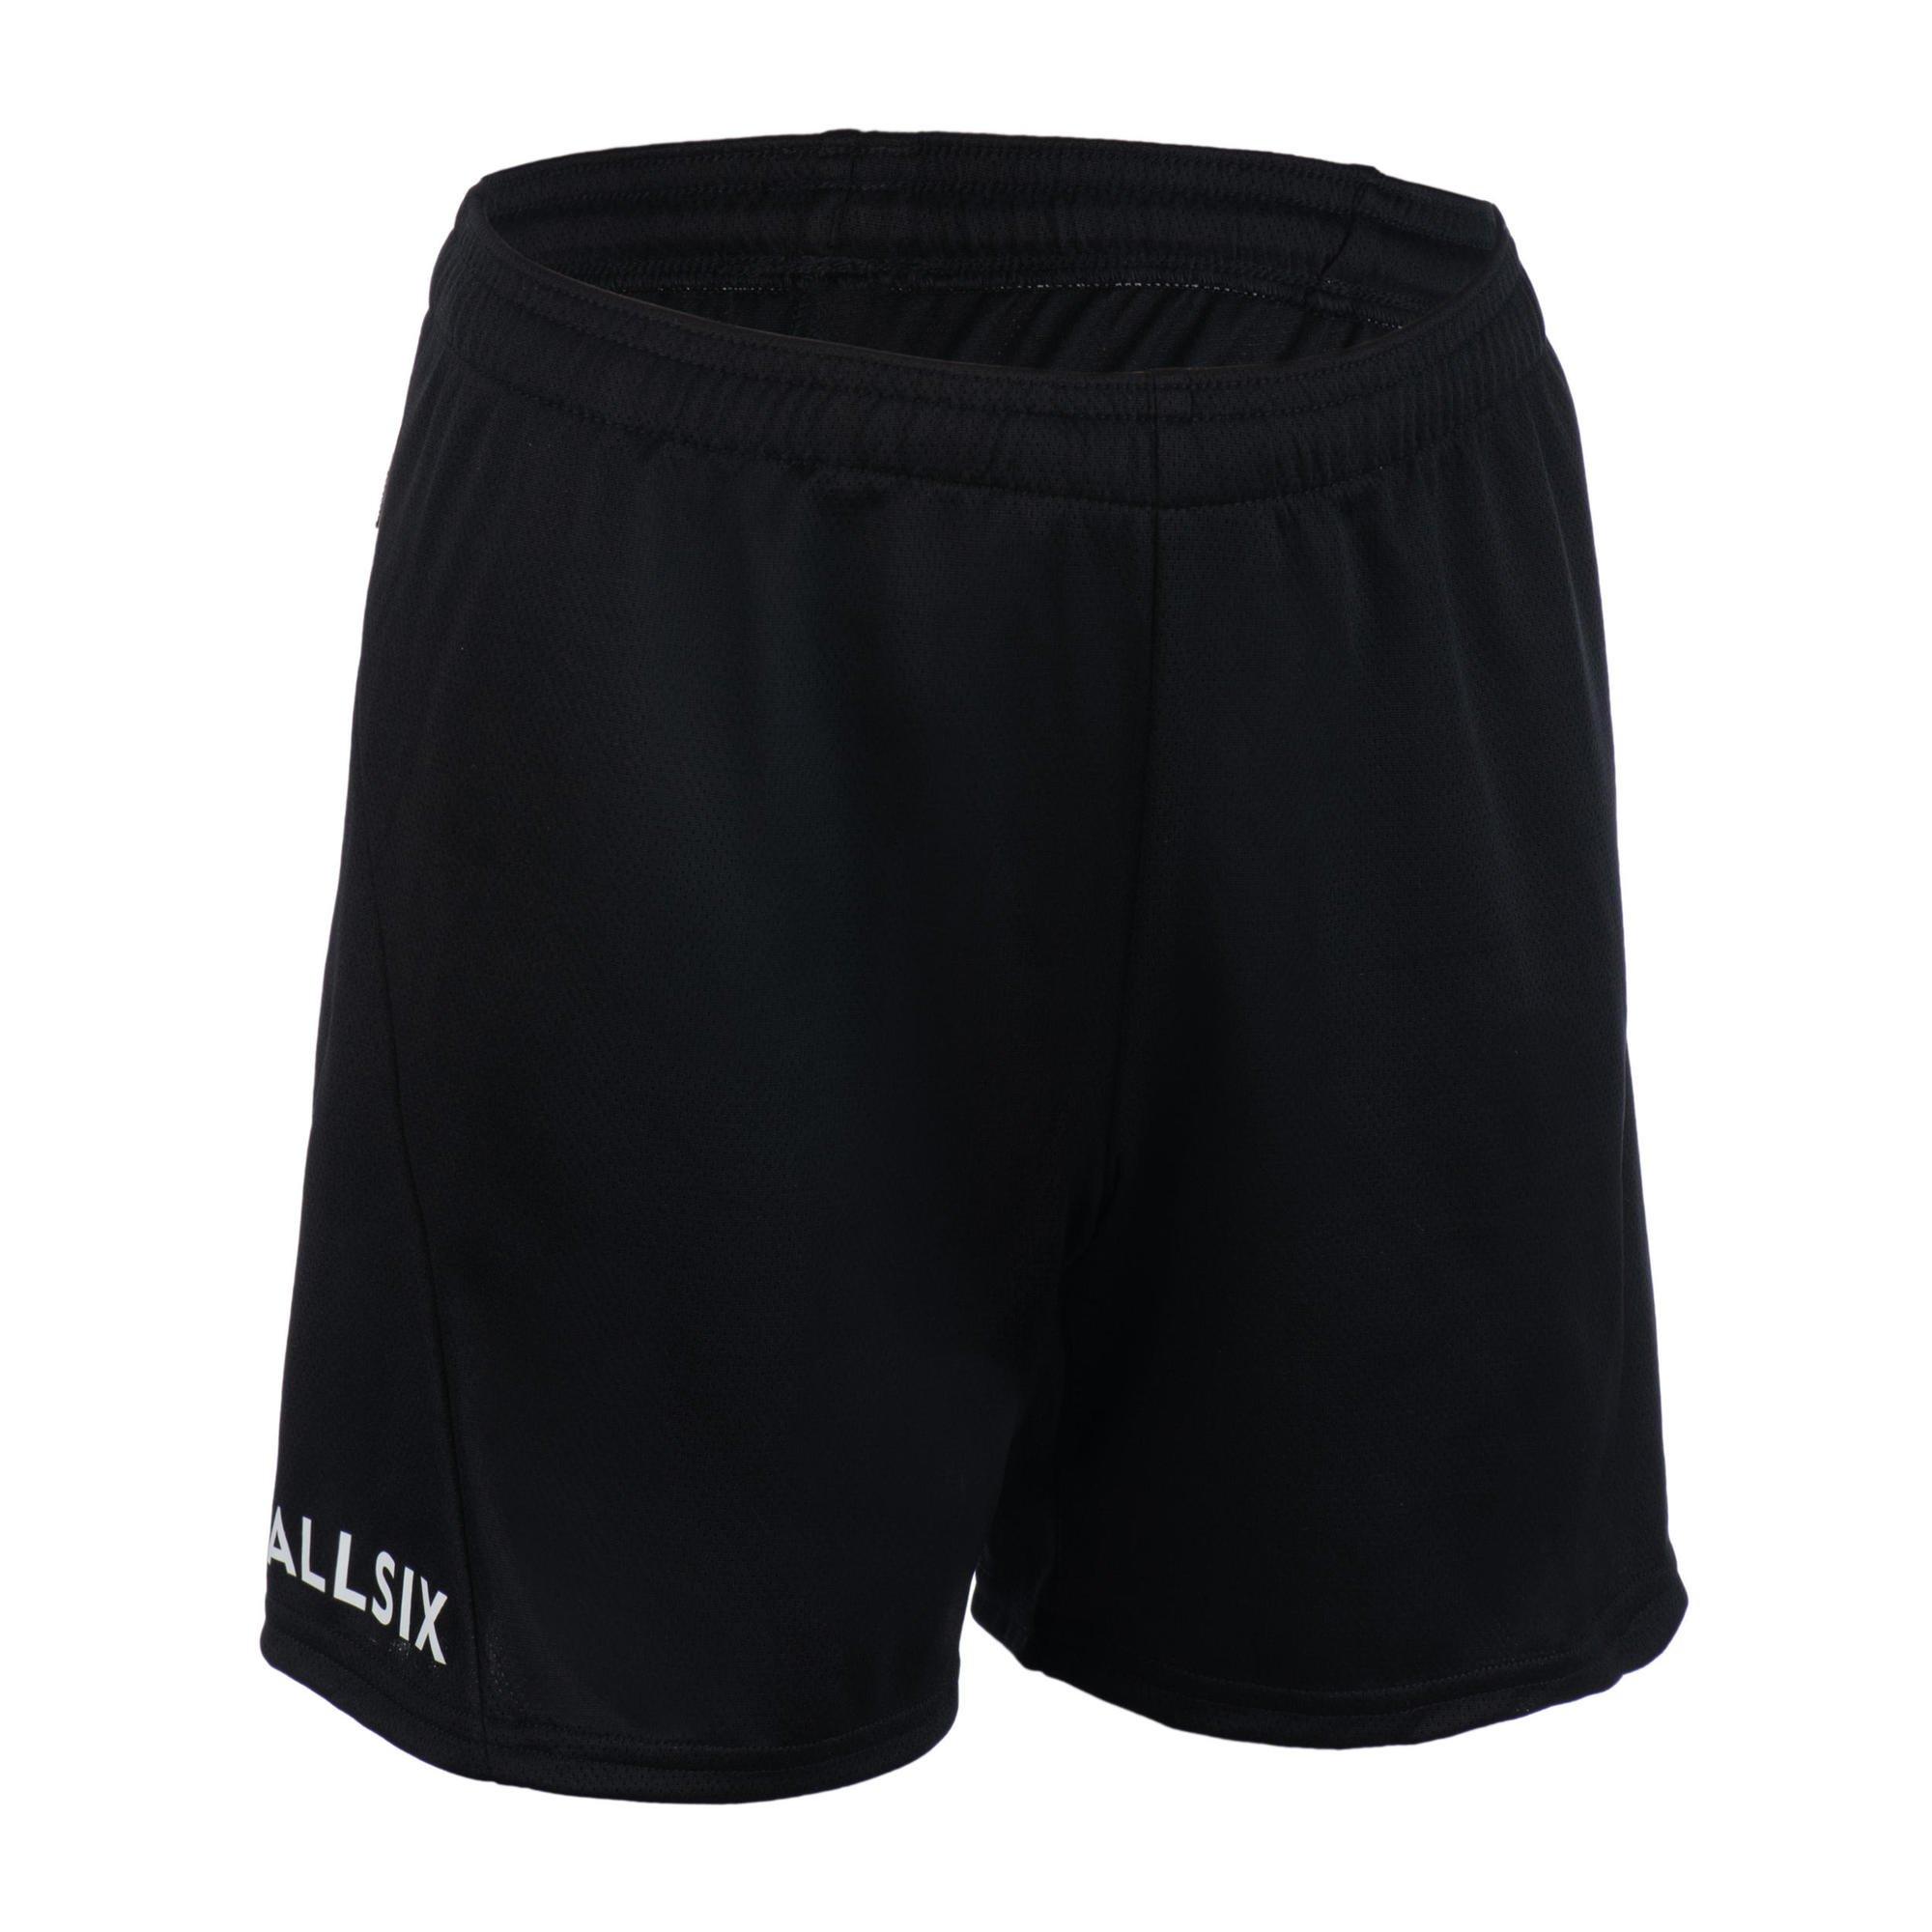 Волейбольные шорты Decathlon V100 Allsix, черный волейбольные шорты decathlon v100 allsix черный